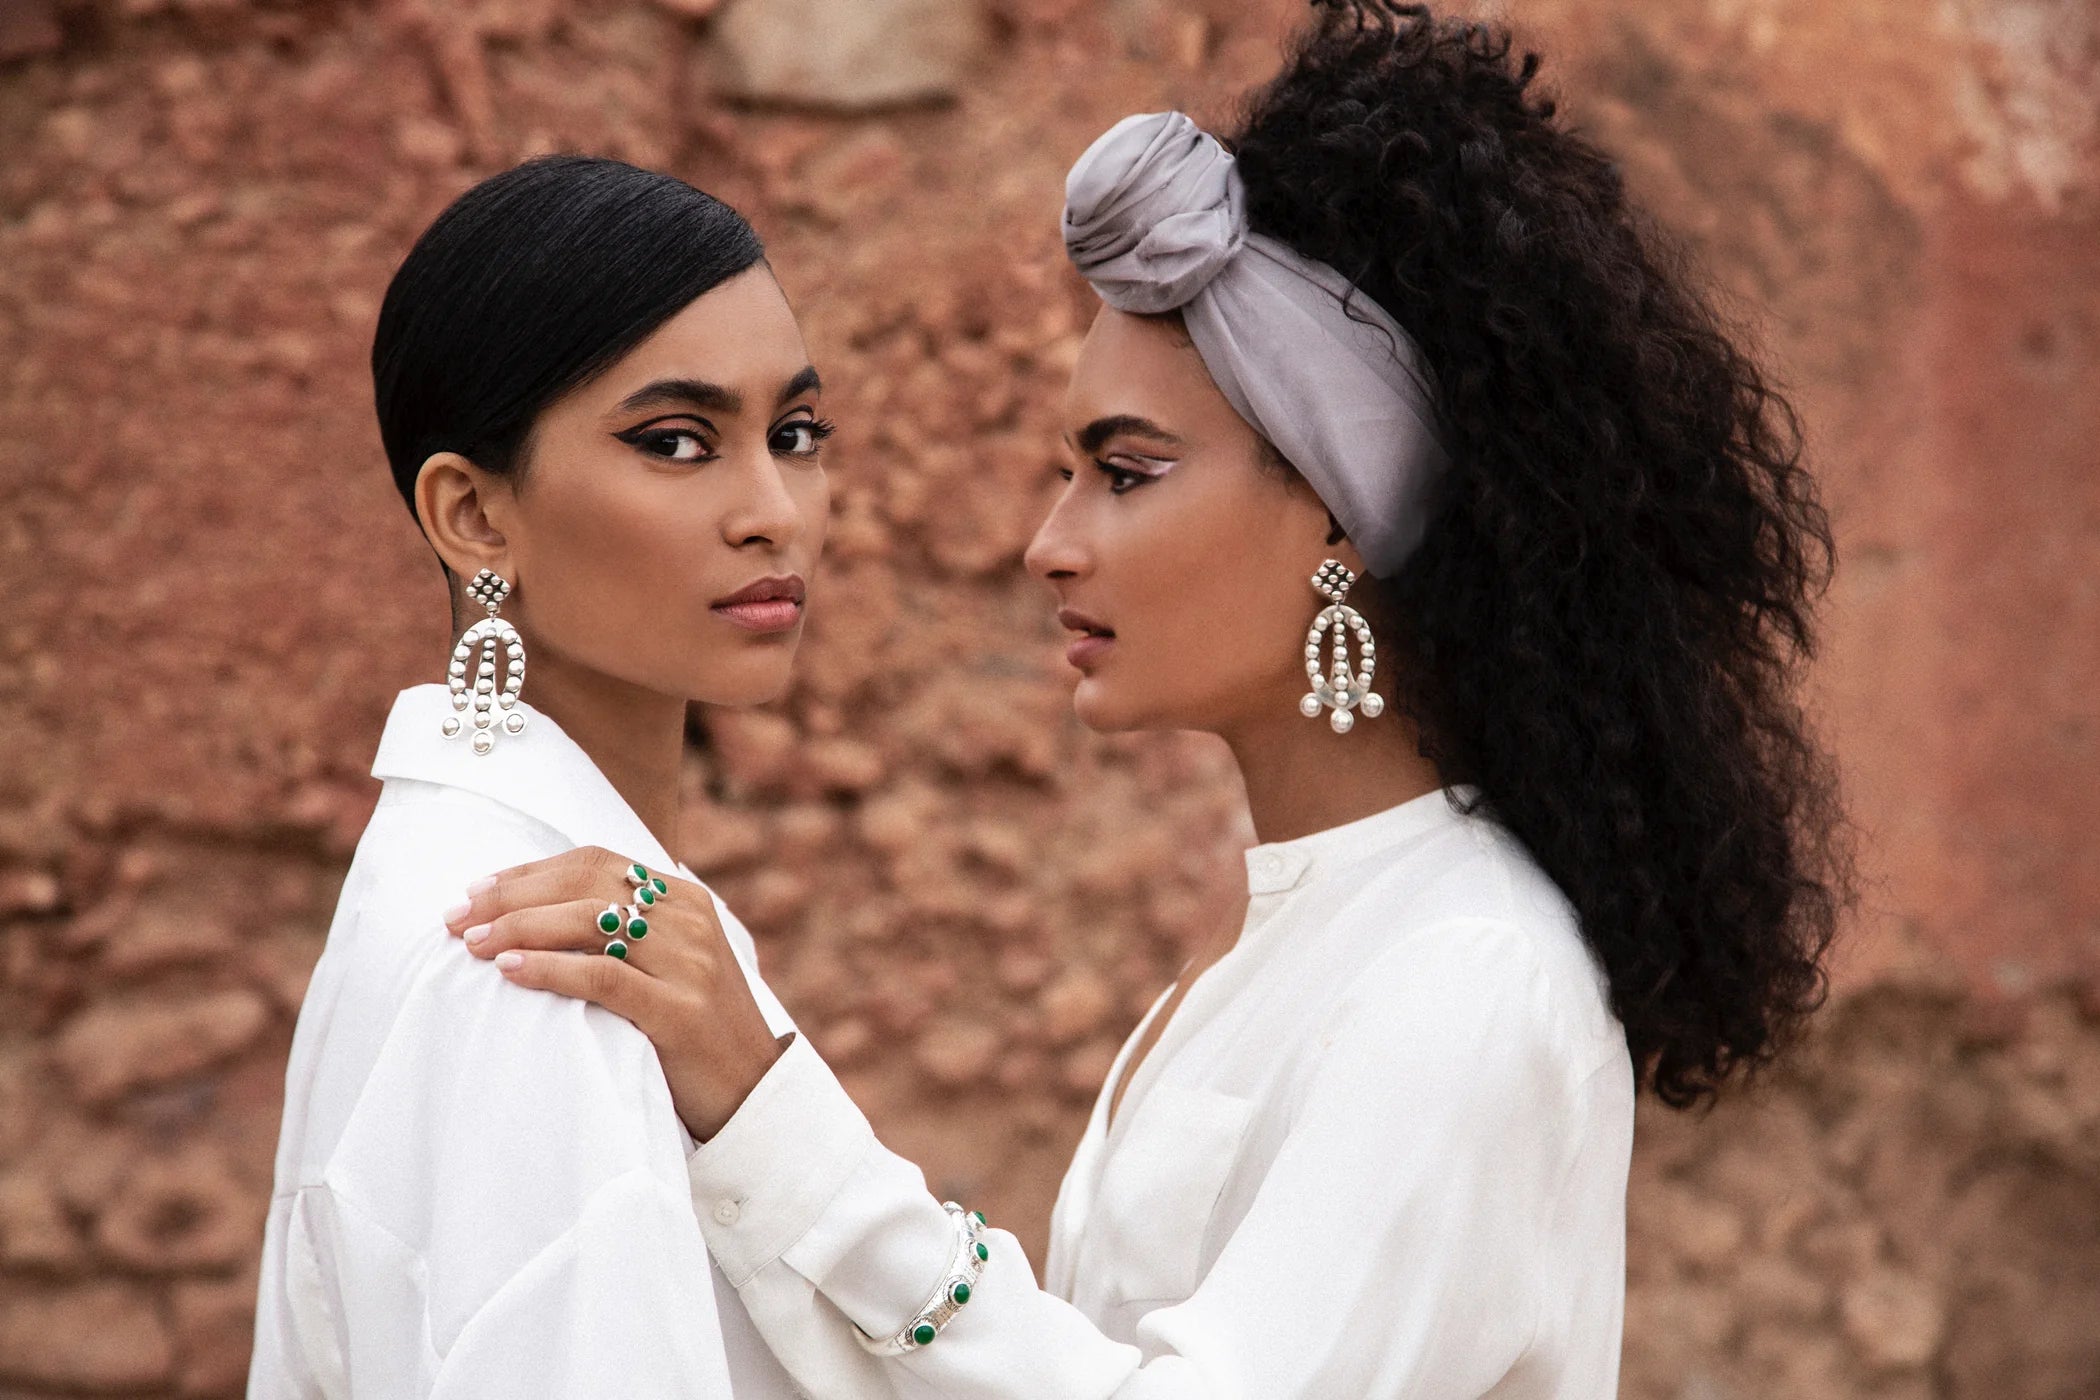 Yelli Jewels Earring Ring Bracelet Silver Two Beautiful Women Desert